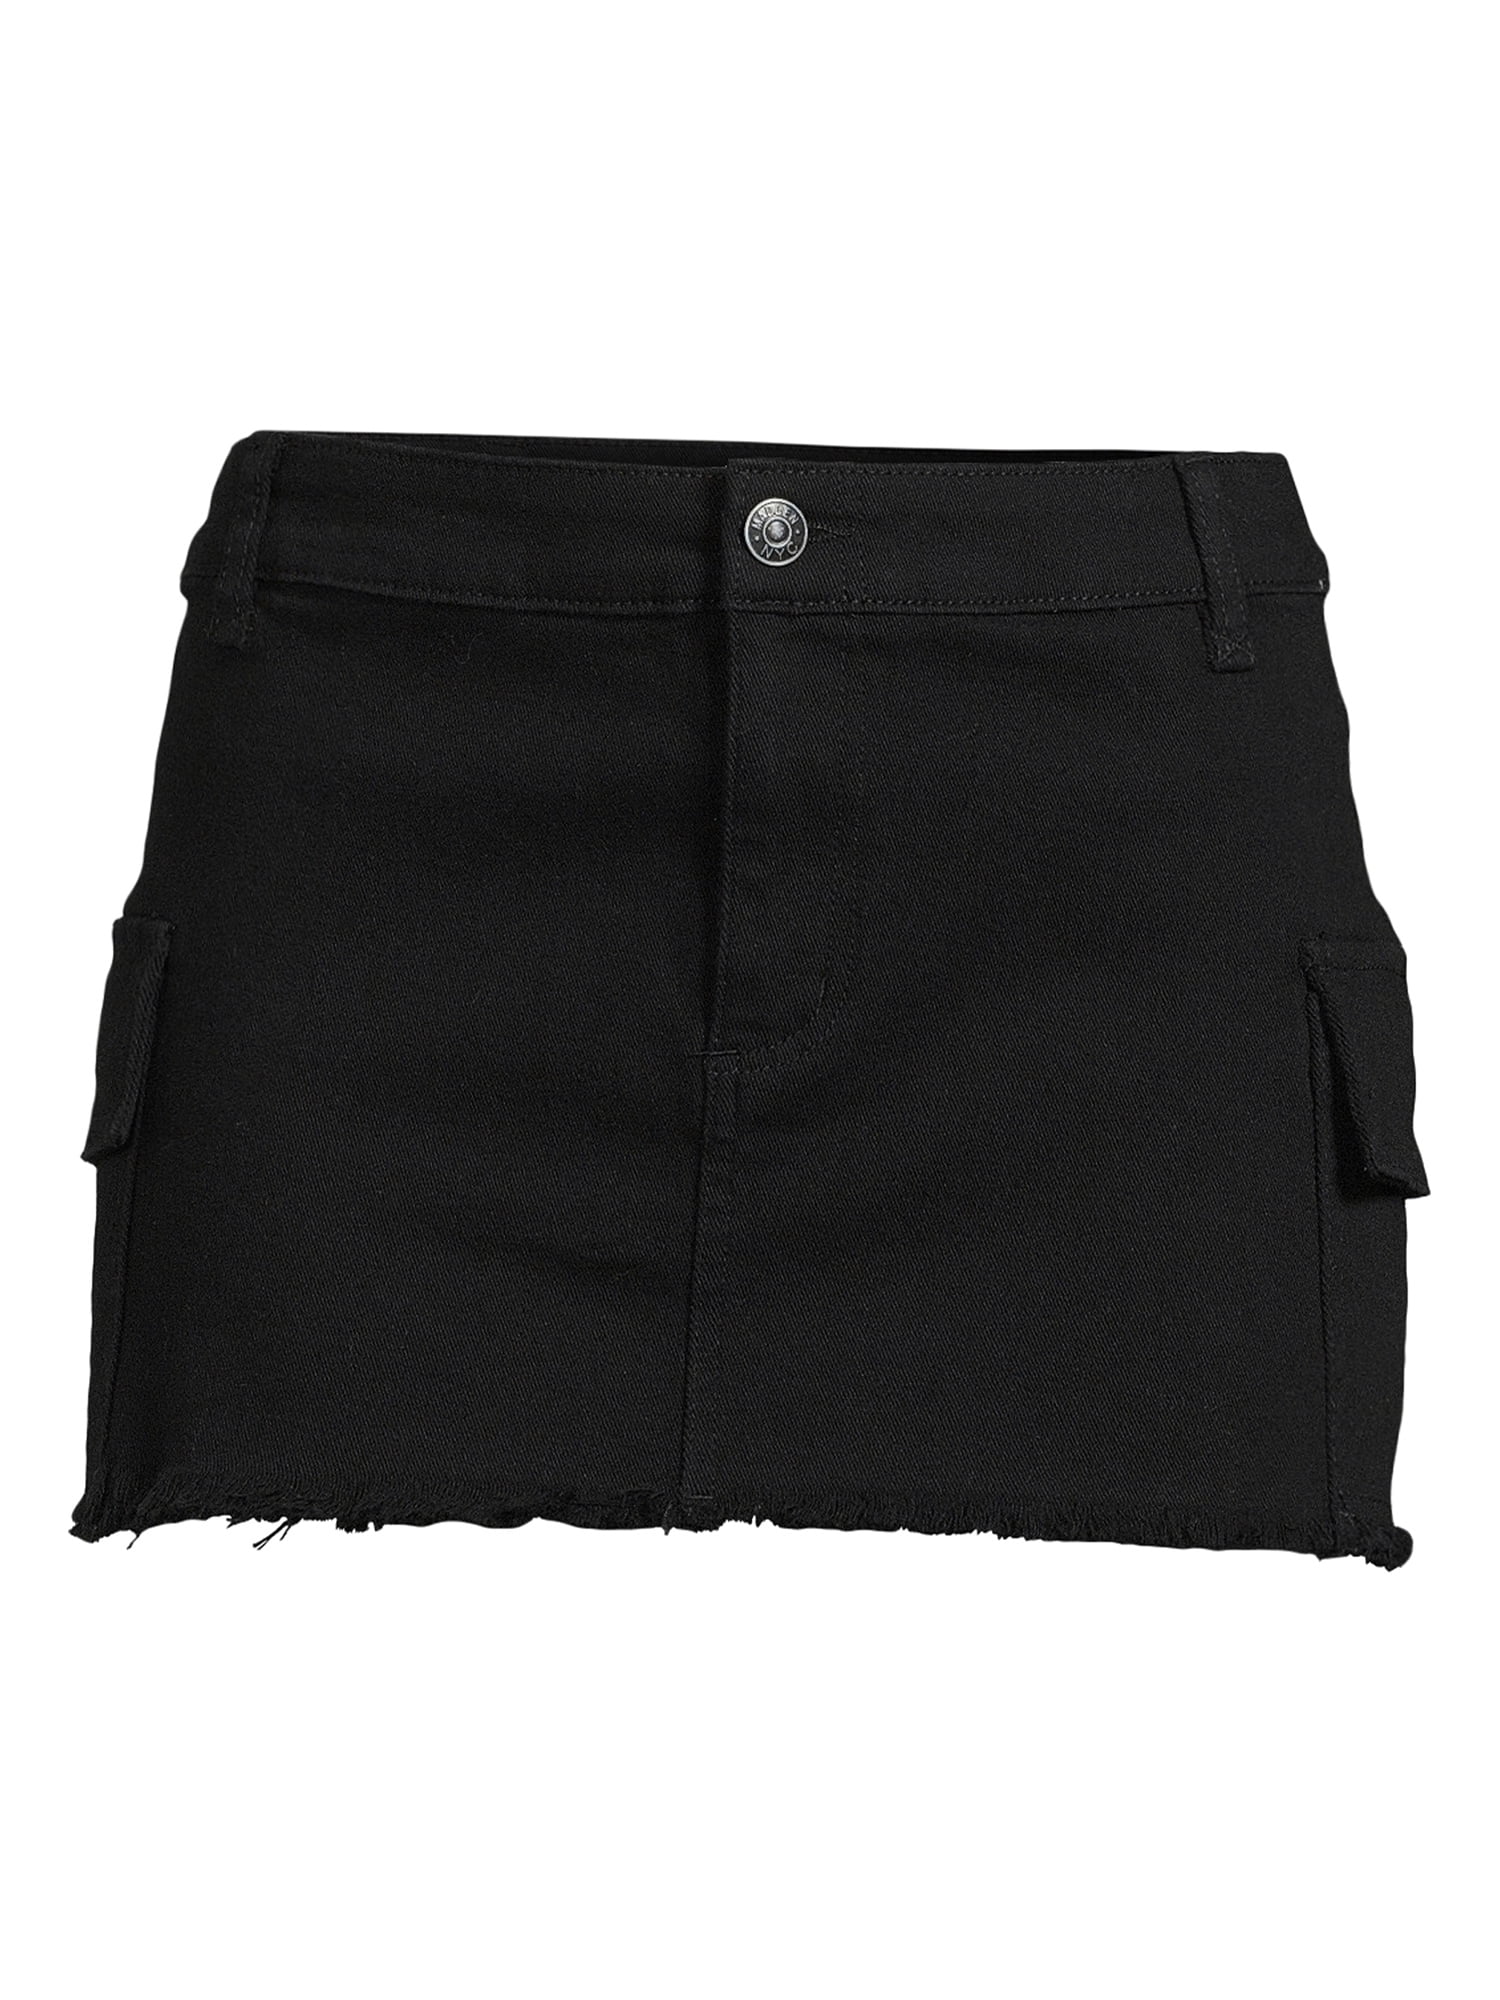 Madden NYC Juniors Cargo Mini Skirt, Sizes XS-3XL